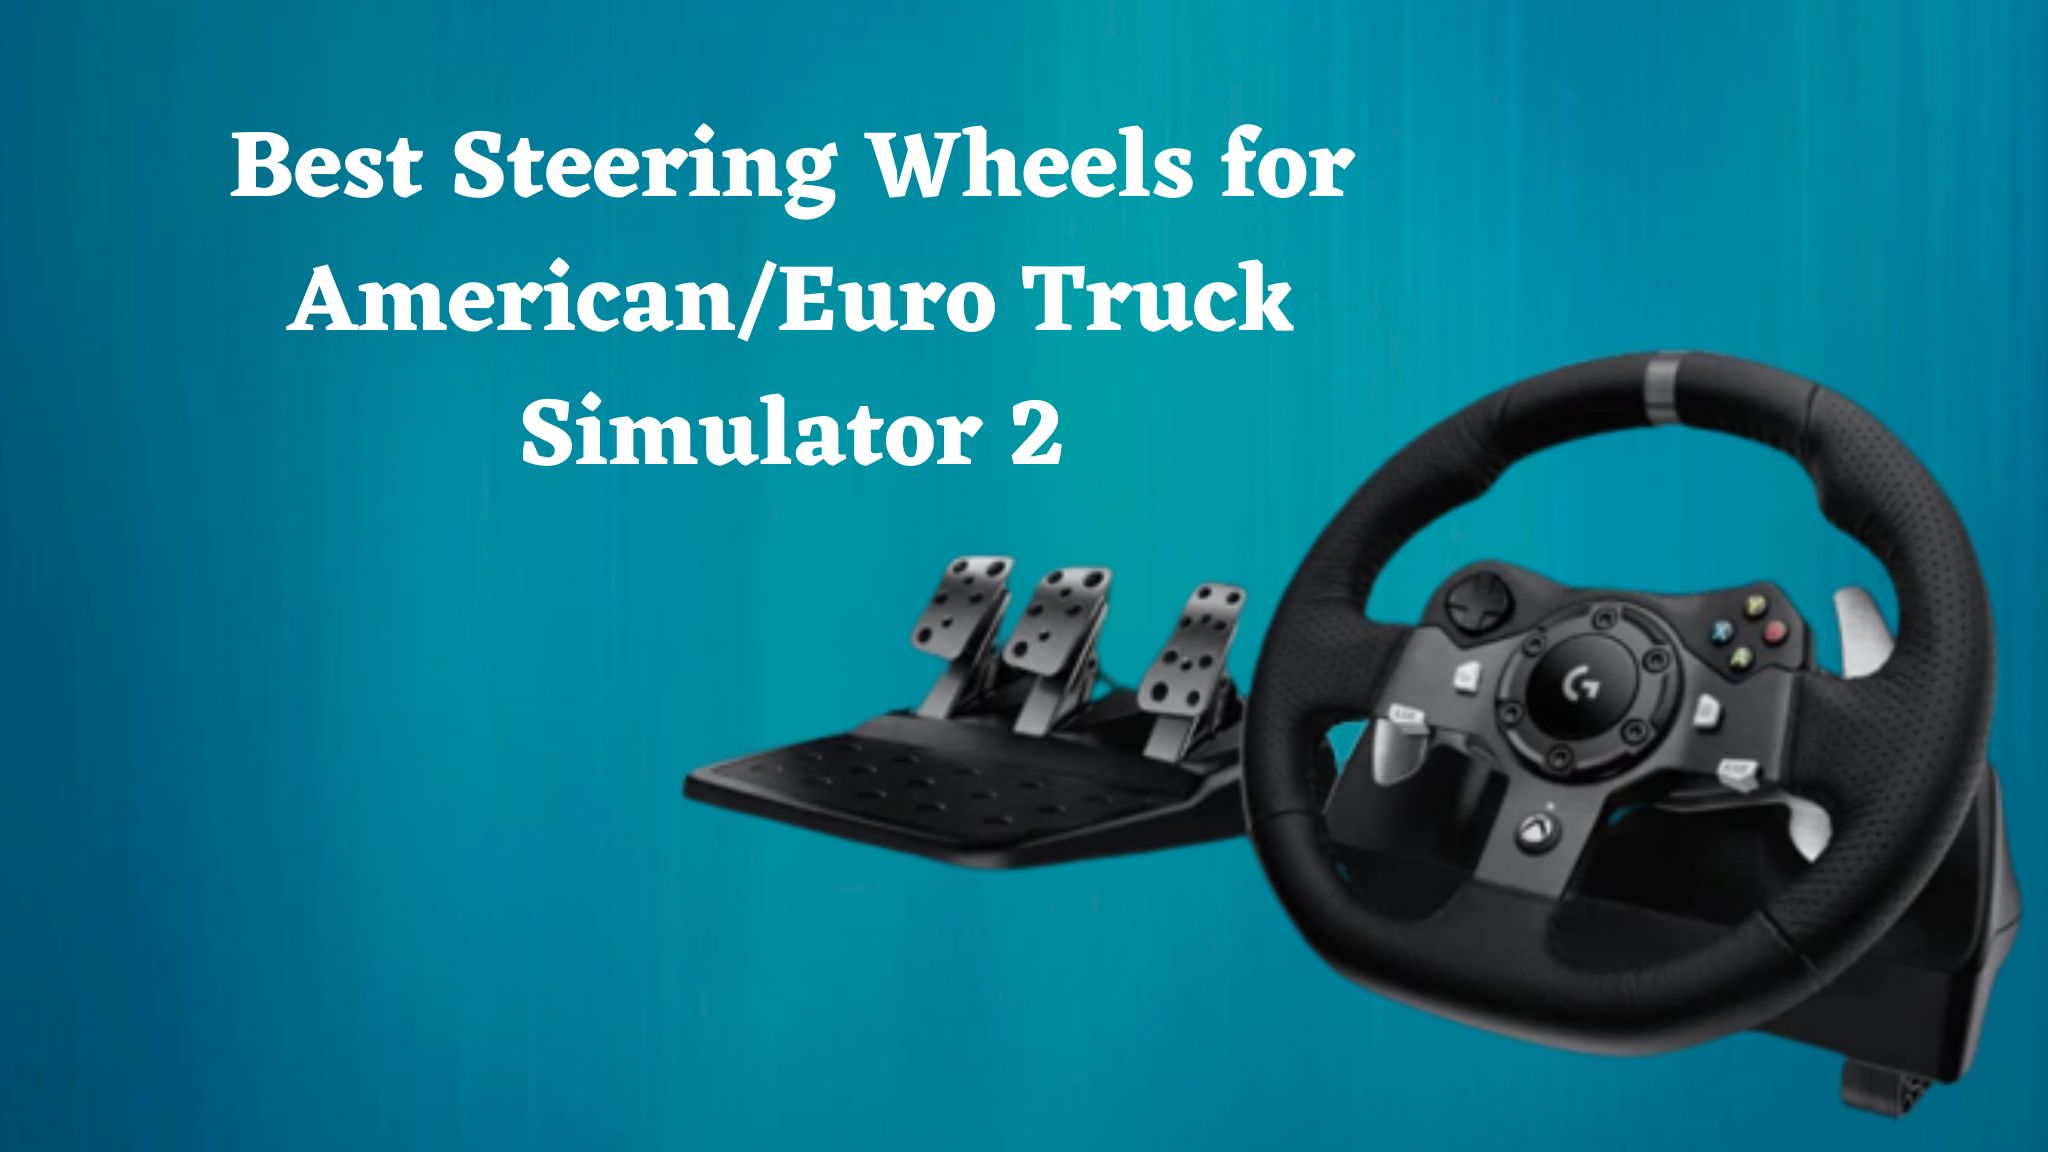 Best Steering Wheels for American/Euro Truck Simulator 2